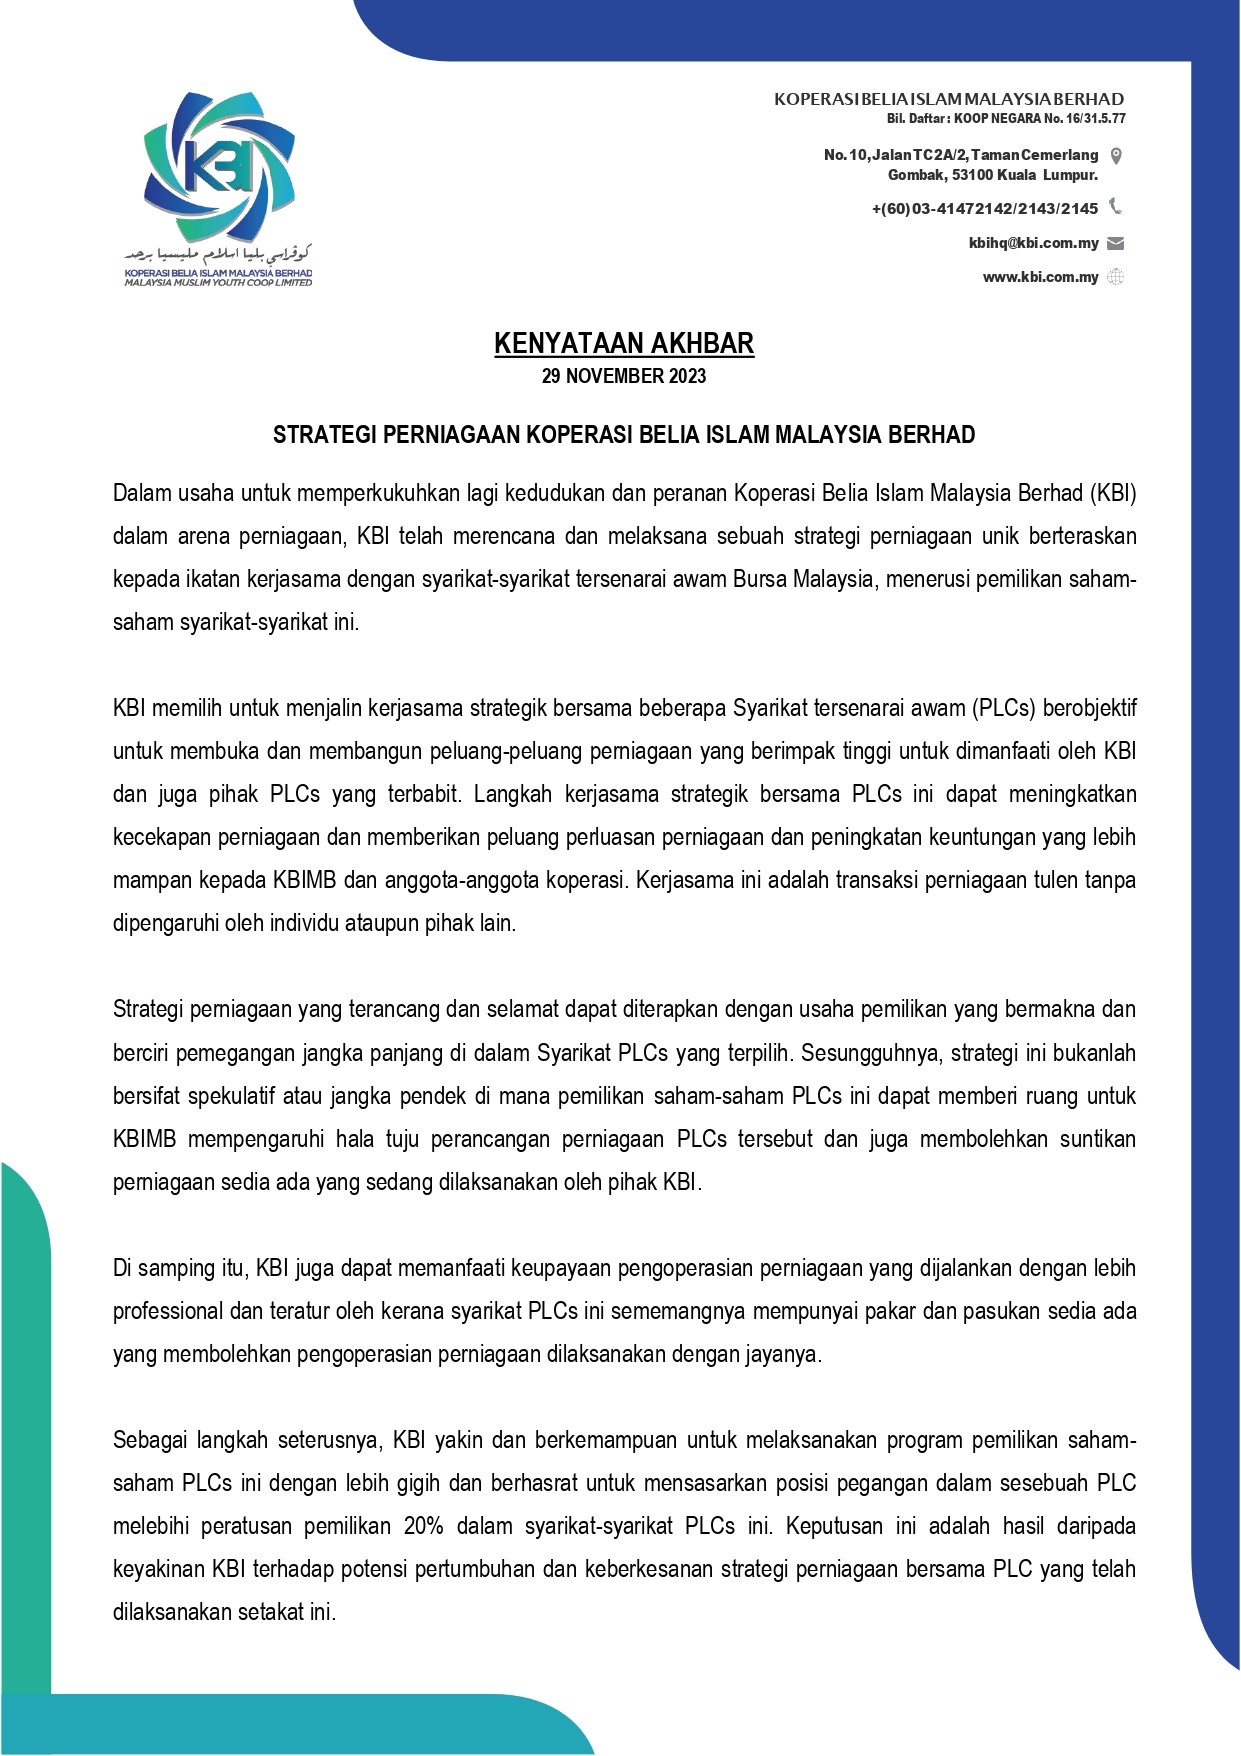 Kenyataan Akhbar – Strategi Perniagaan Koperasi Belia Islam Malaysia Berhad